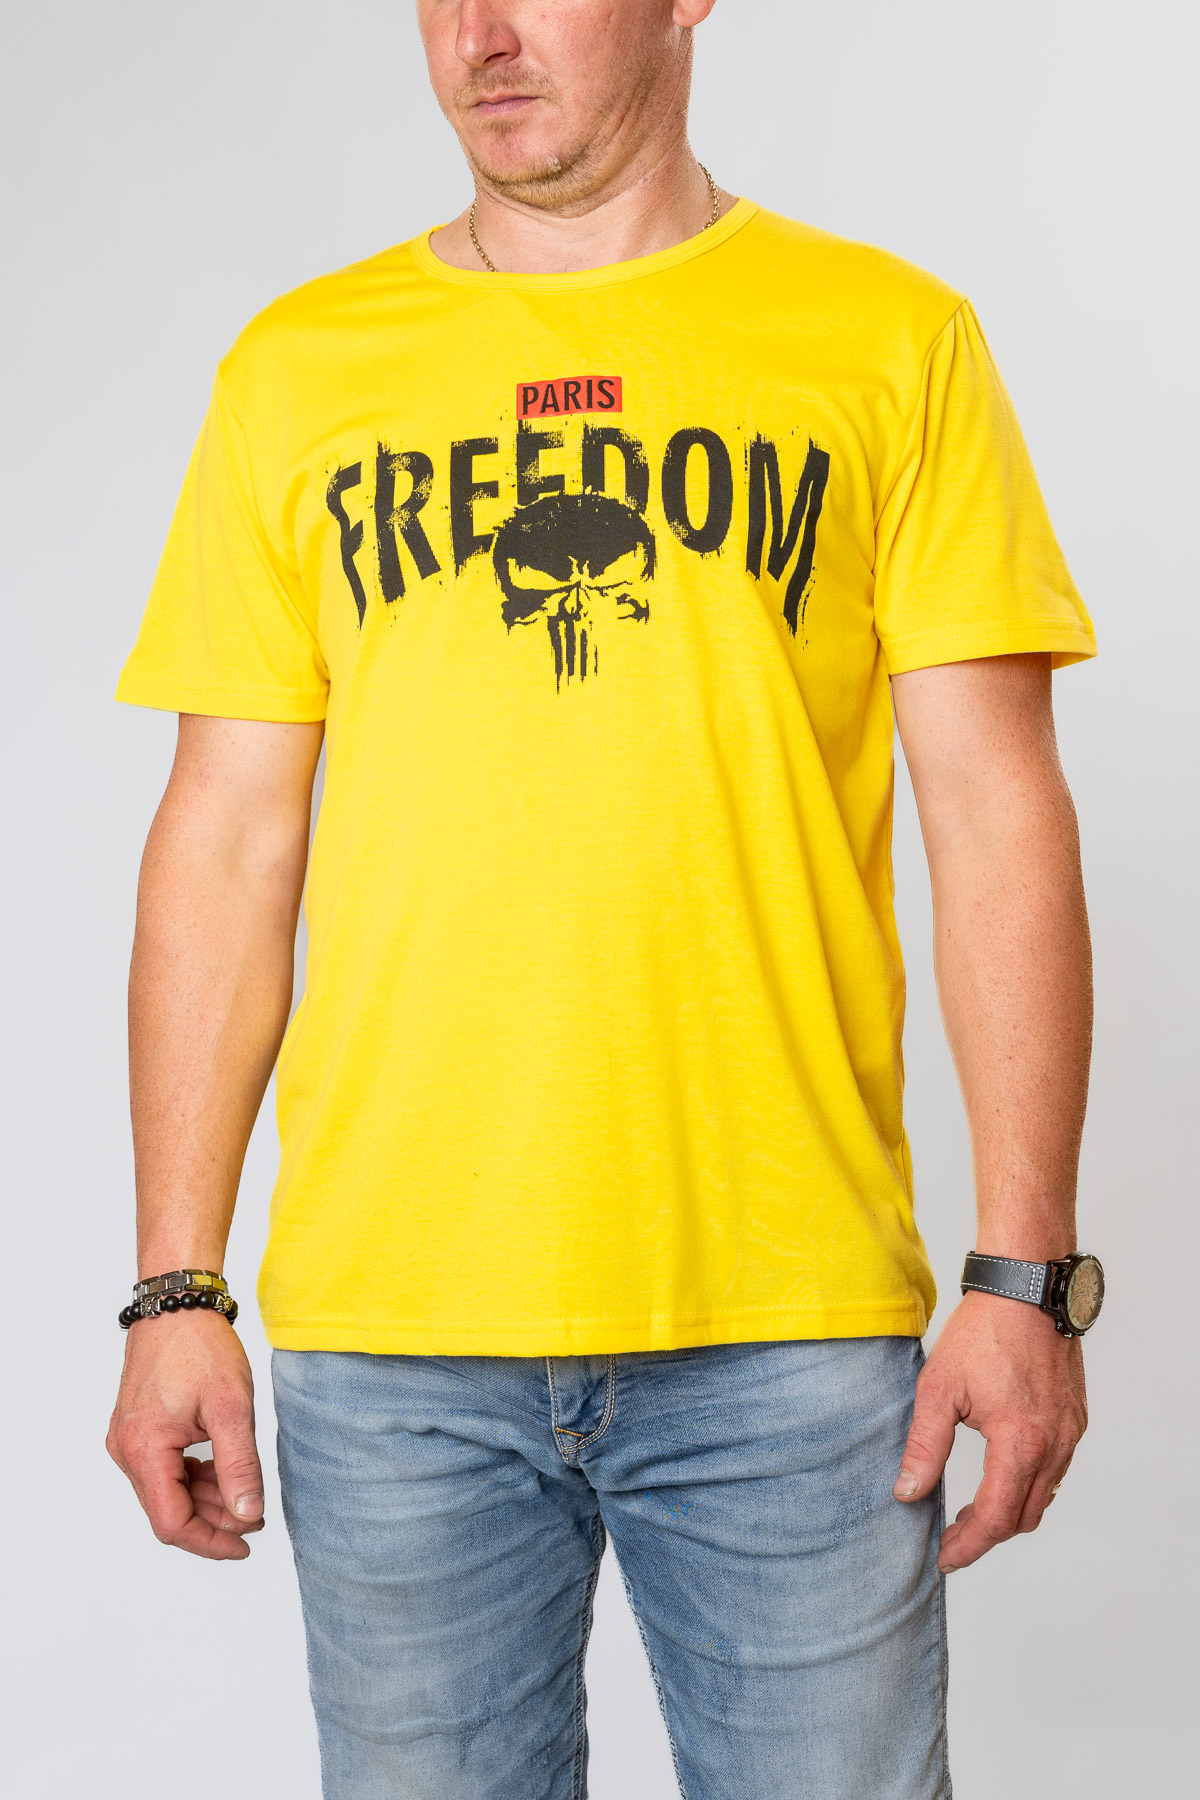 Pánske tričko PARIS FREEDOM - žlté